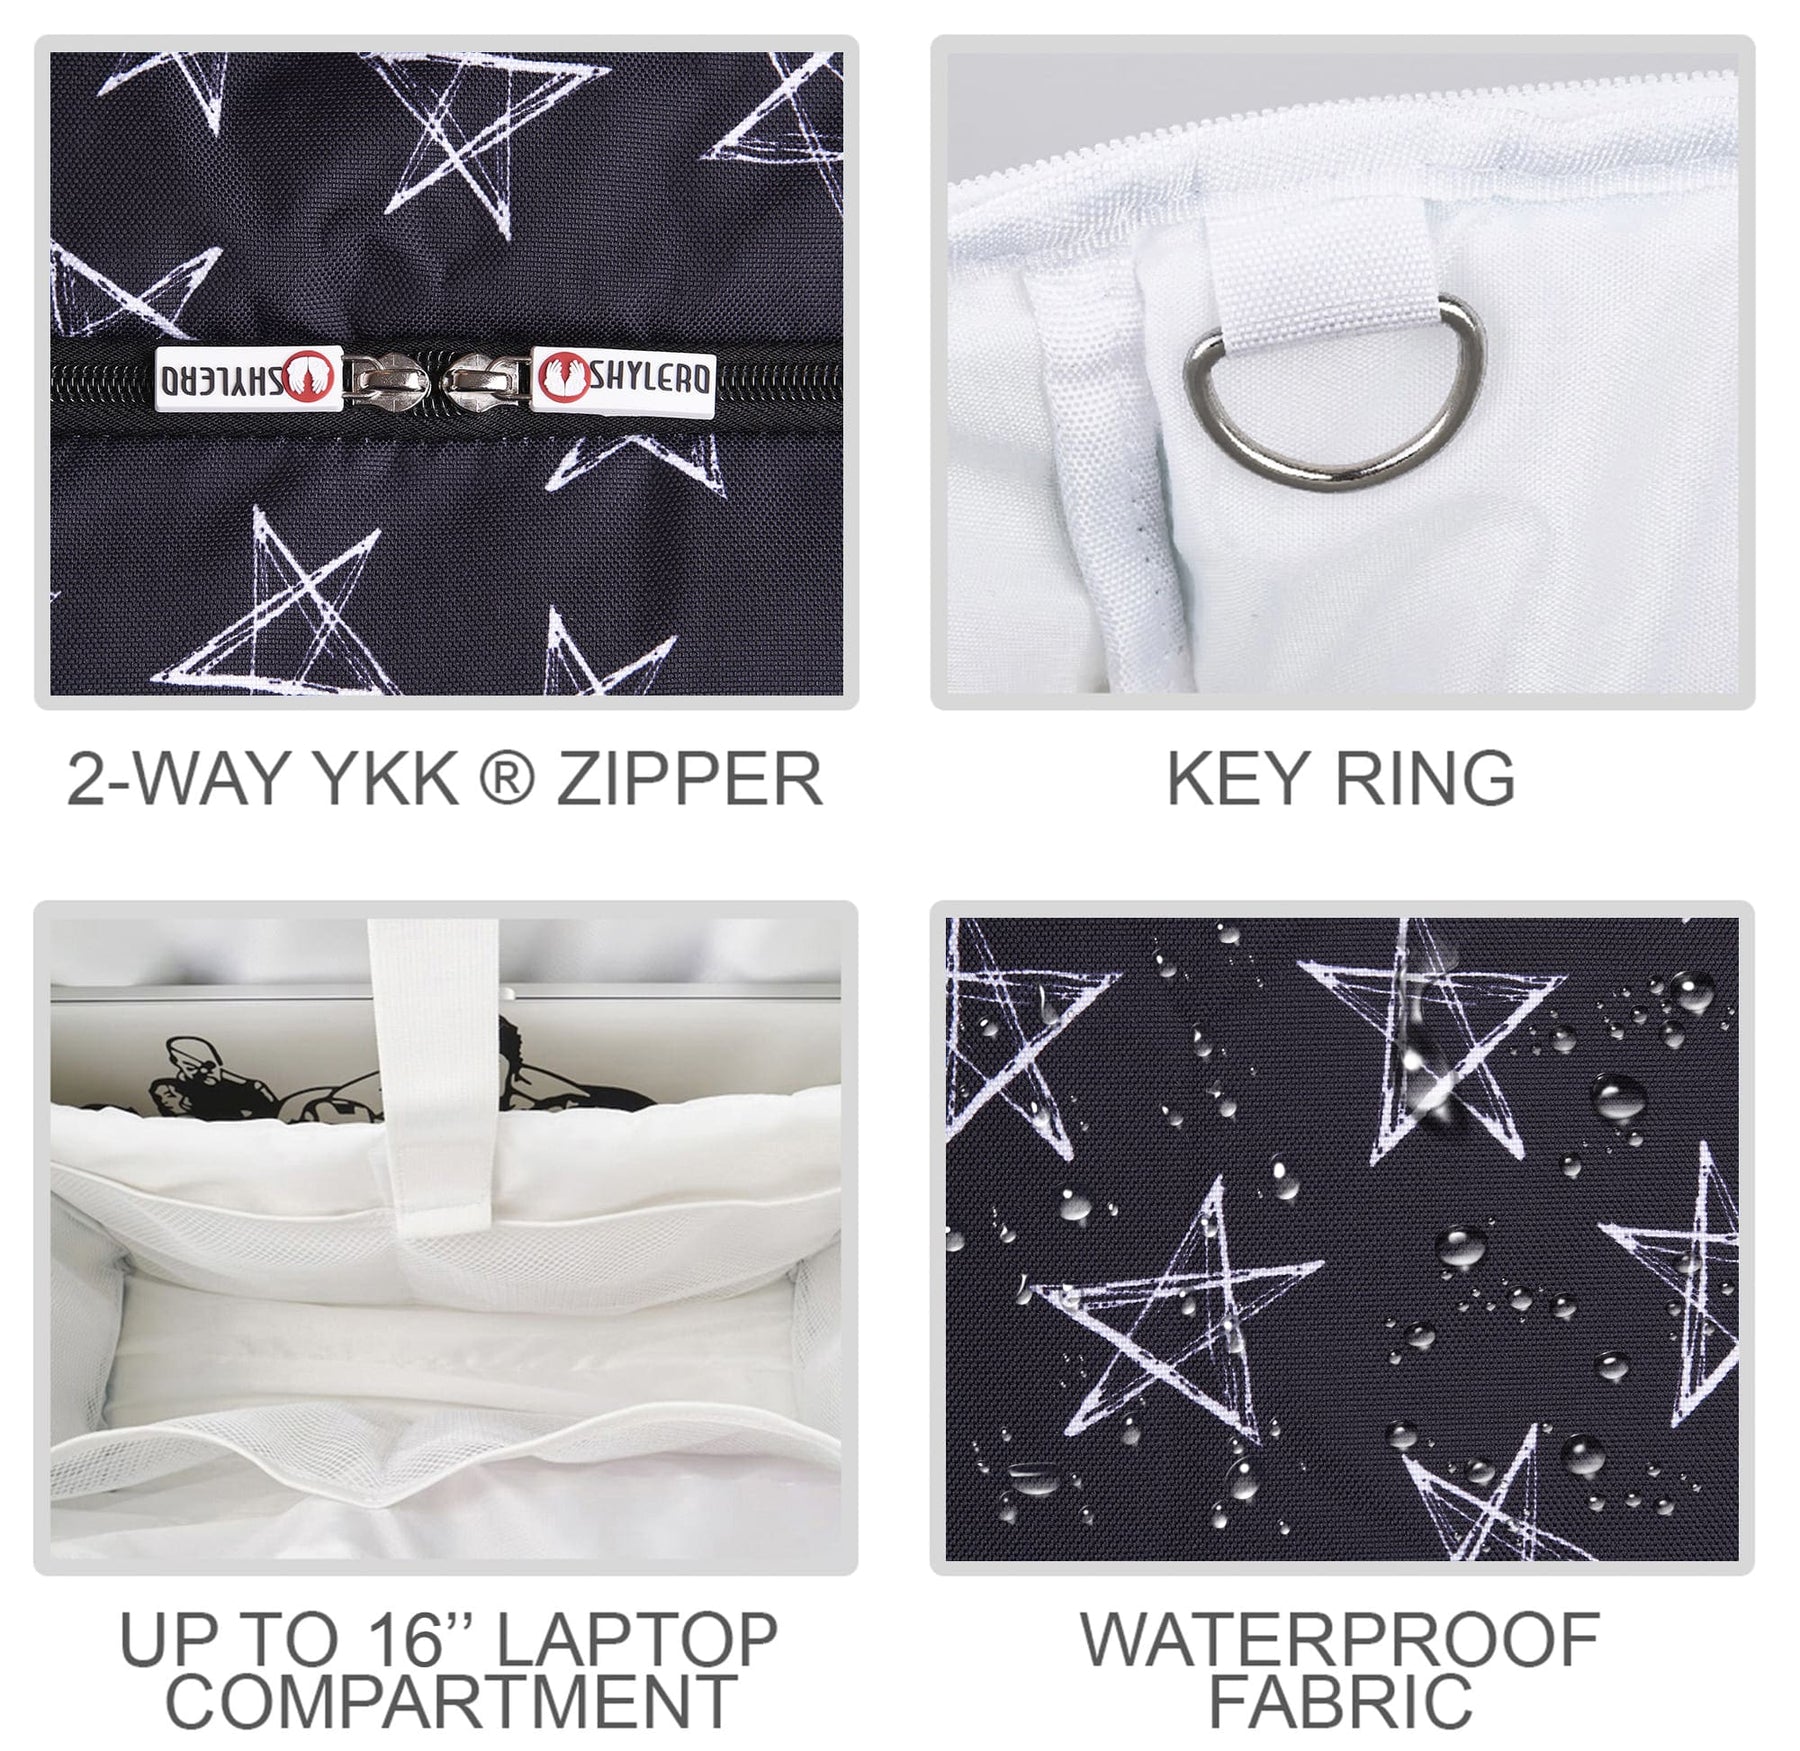 Nurse Bag and Utility Tote | Waterproof | Top YKK® Zip | L18" x H14" x W7" (46x18x36cm) | White Stars